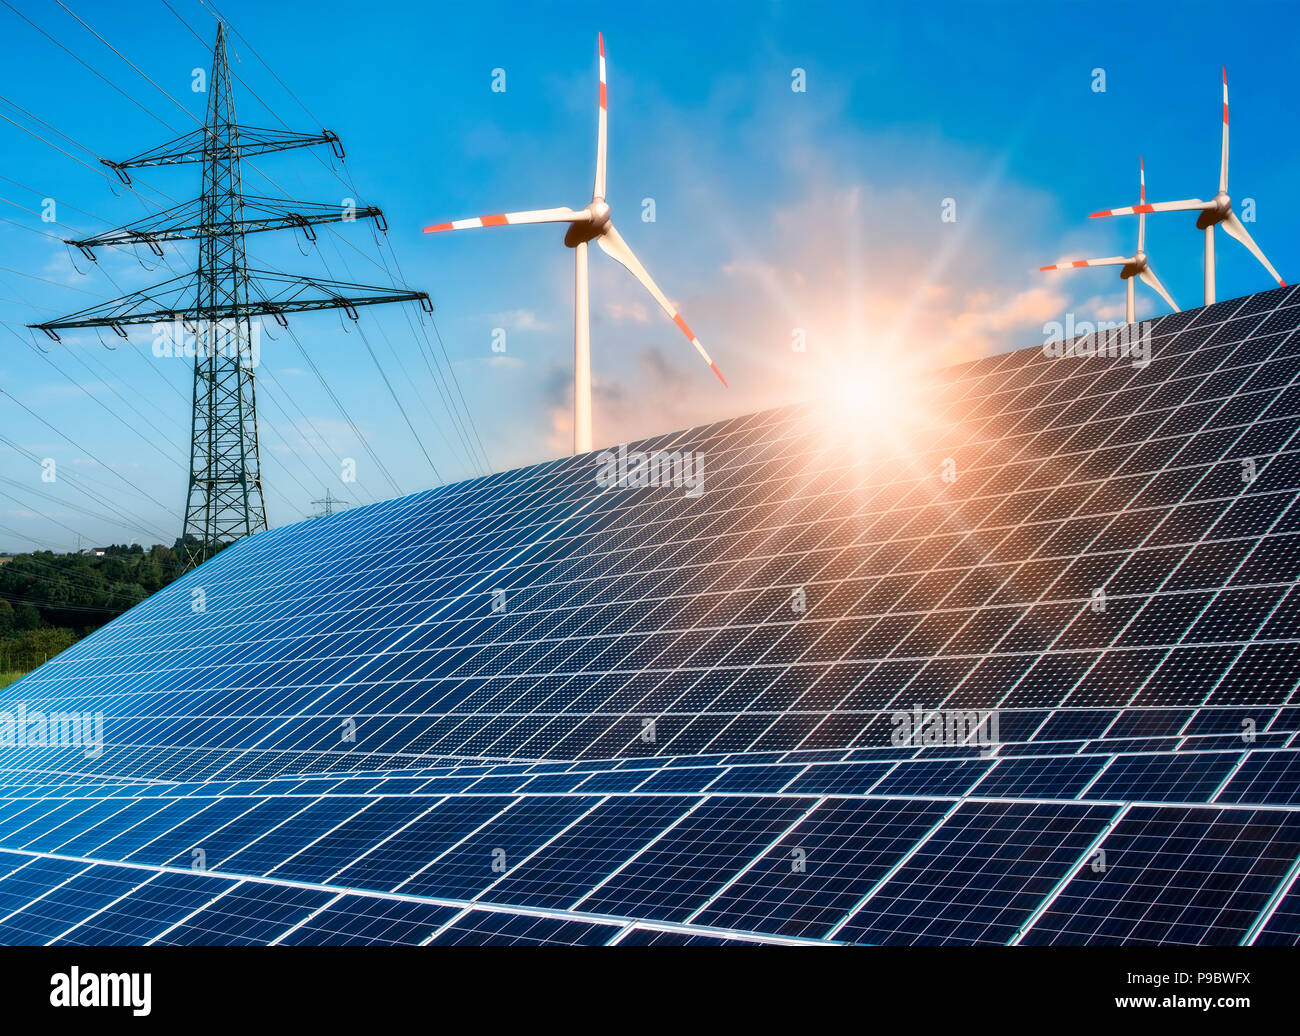 Photovoltaikanlage, wind turbine und Strommast mit hellen Sonne Stockfoto